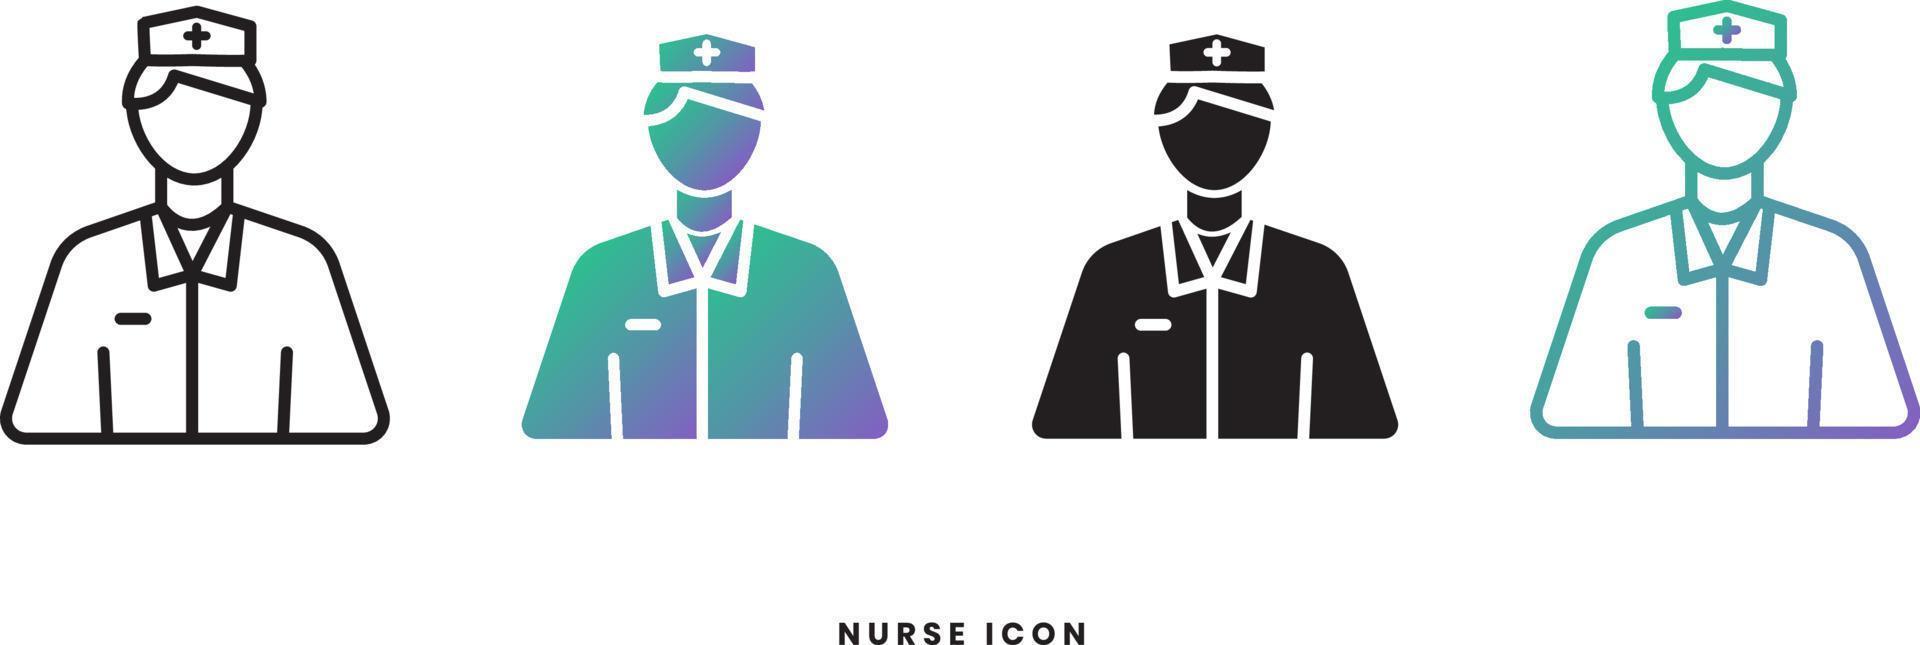 vektor sjuksköterska manlig ikon i solid, gradient och linje stilar. trendiga färger. isolerad på en vit bakgrund